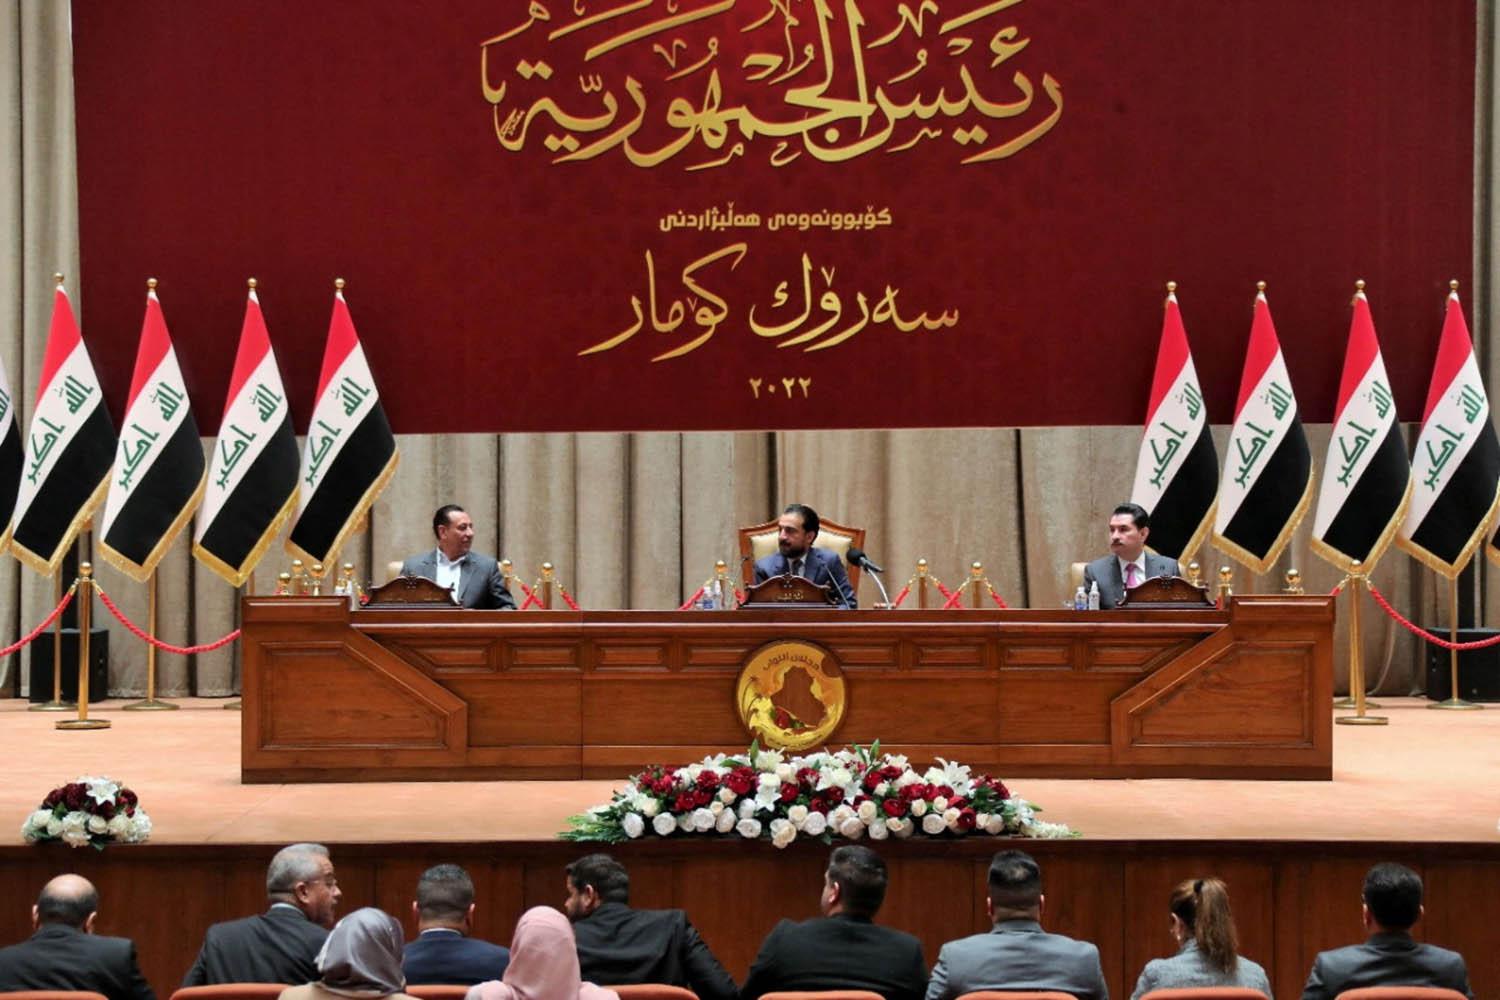 جلسة نقاش في البرلمان بعد تأجيل التصويت على الرئيس